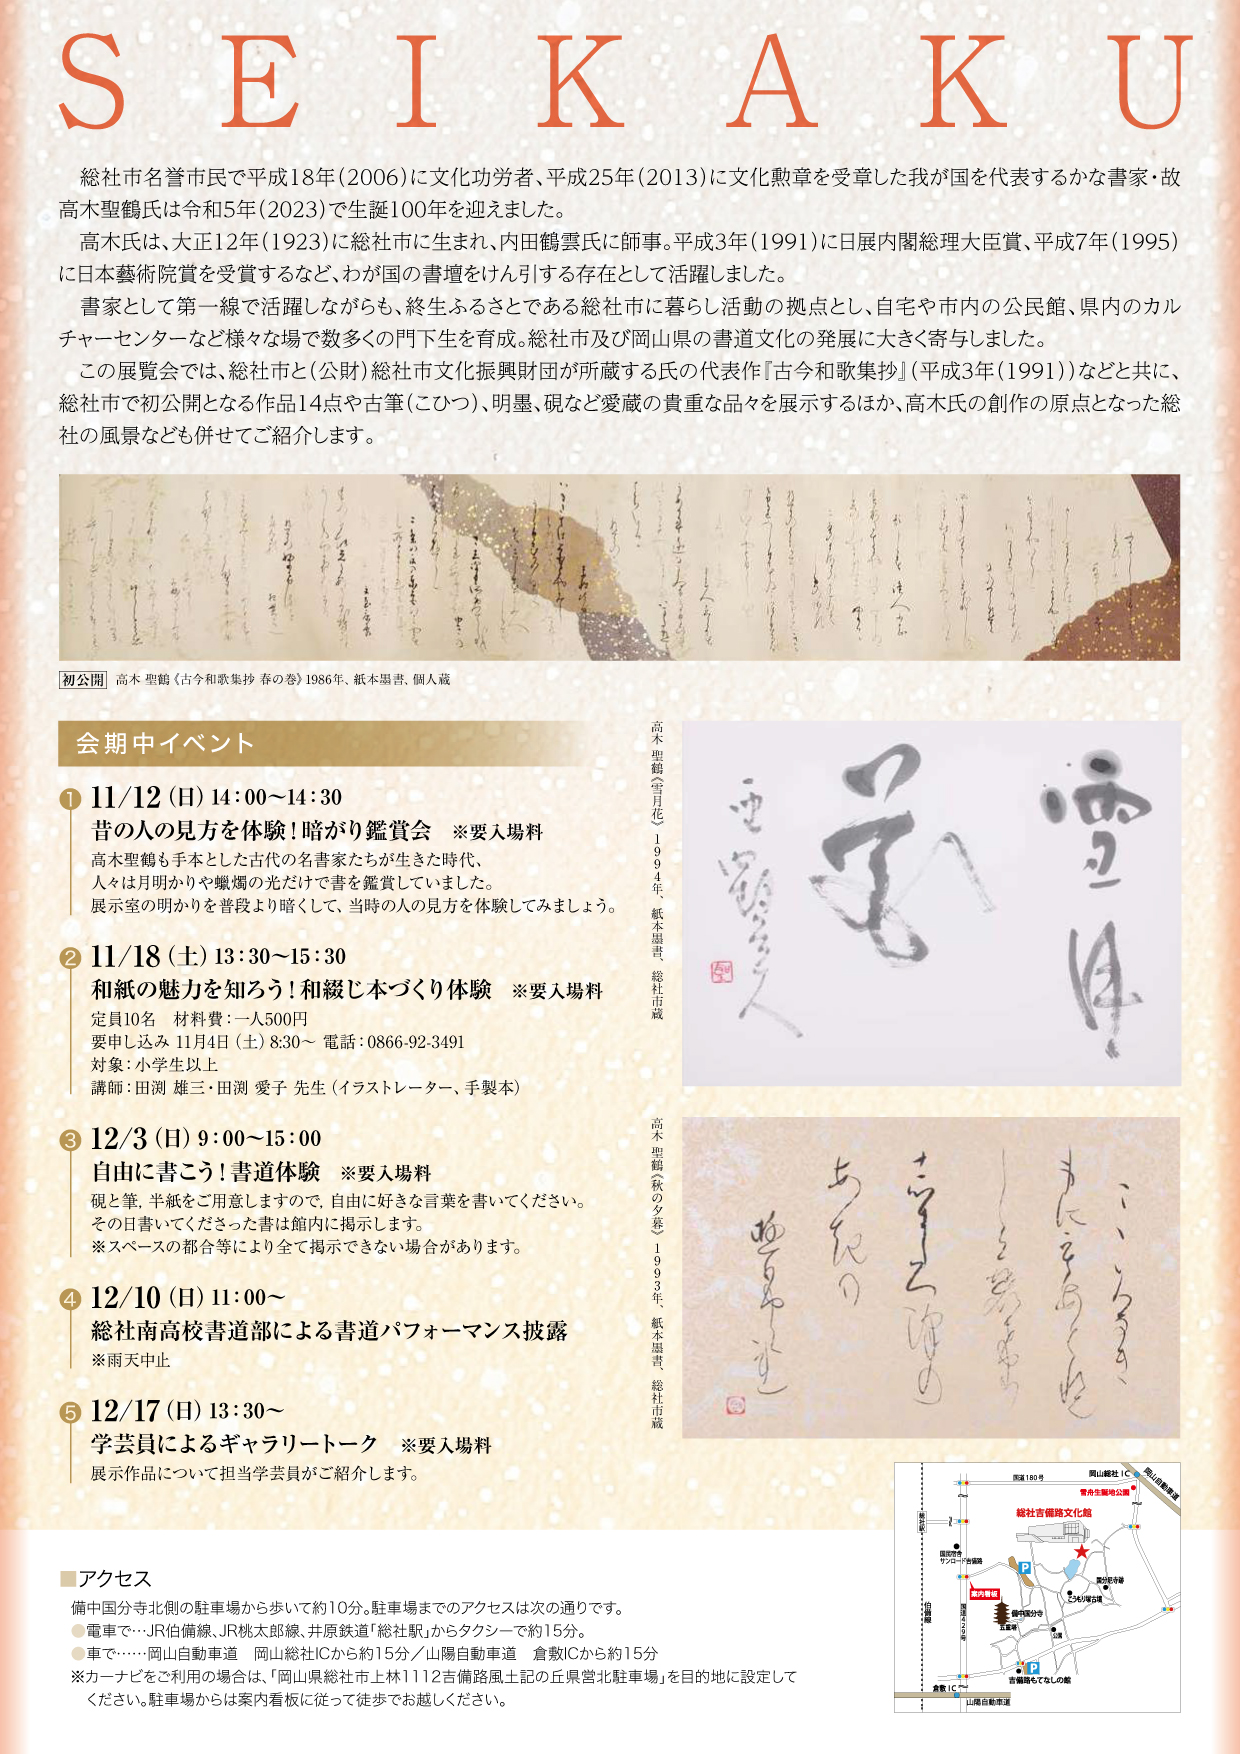 高木聖鶴生誕100周年記念展”（10月24日〜12月17日まで）開催